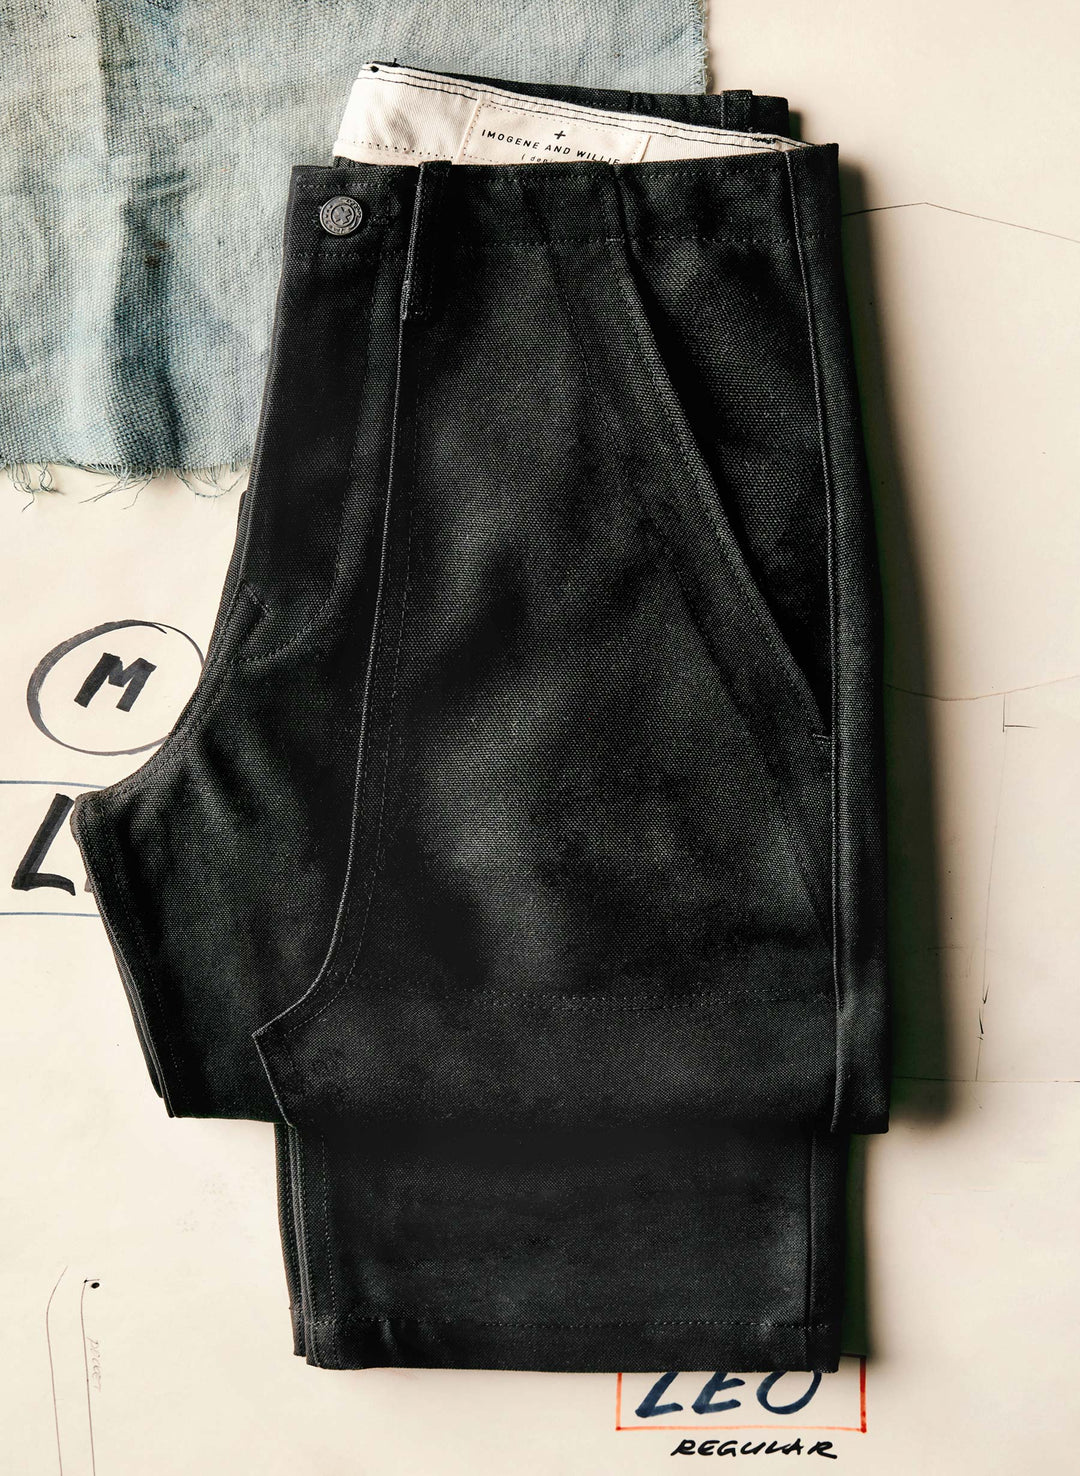 a pair of black pants